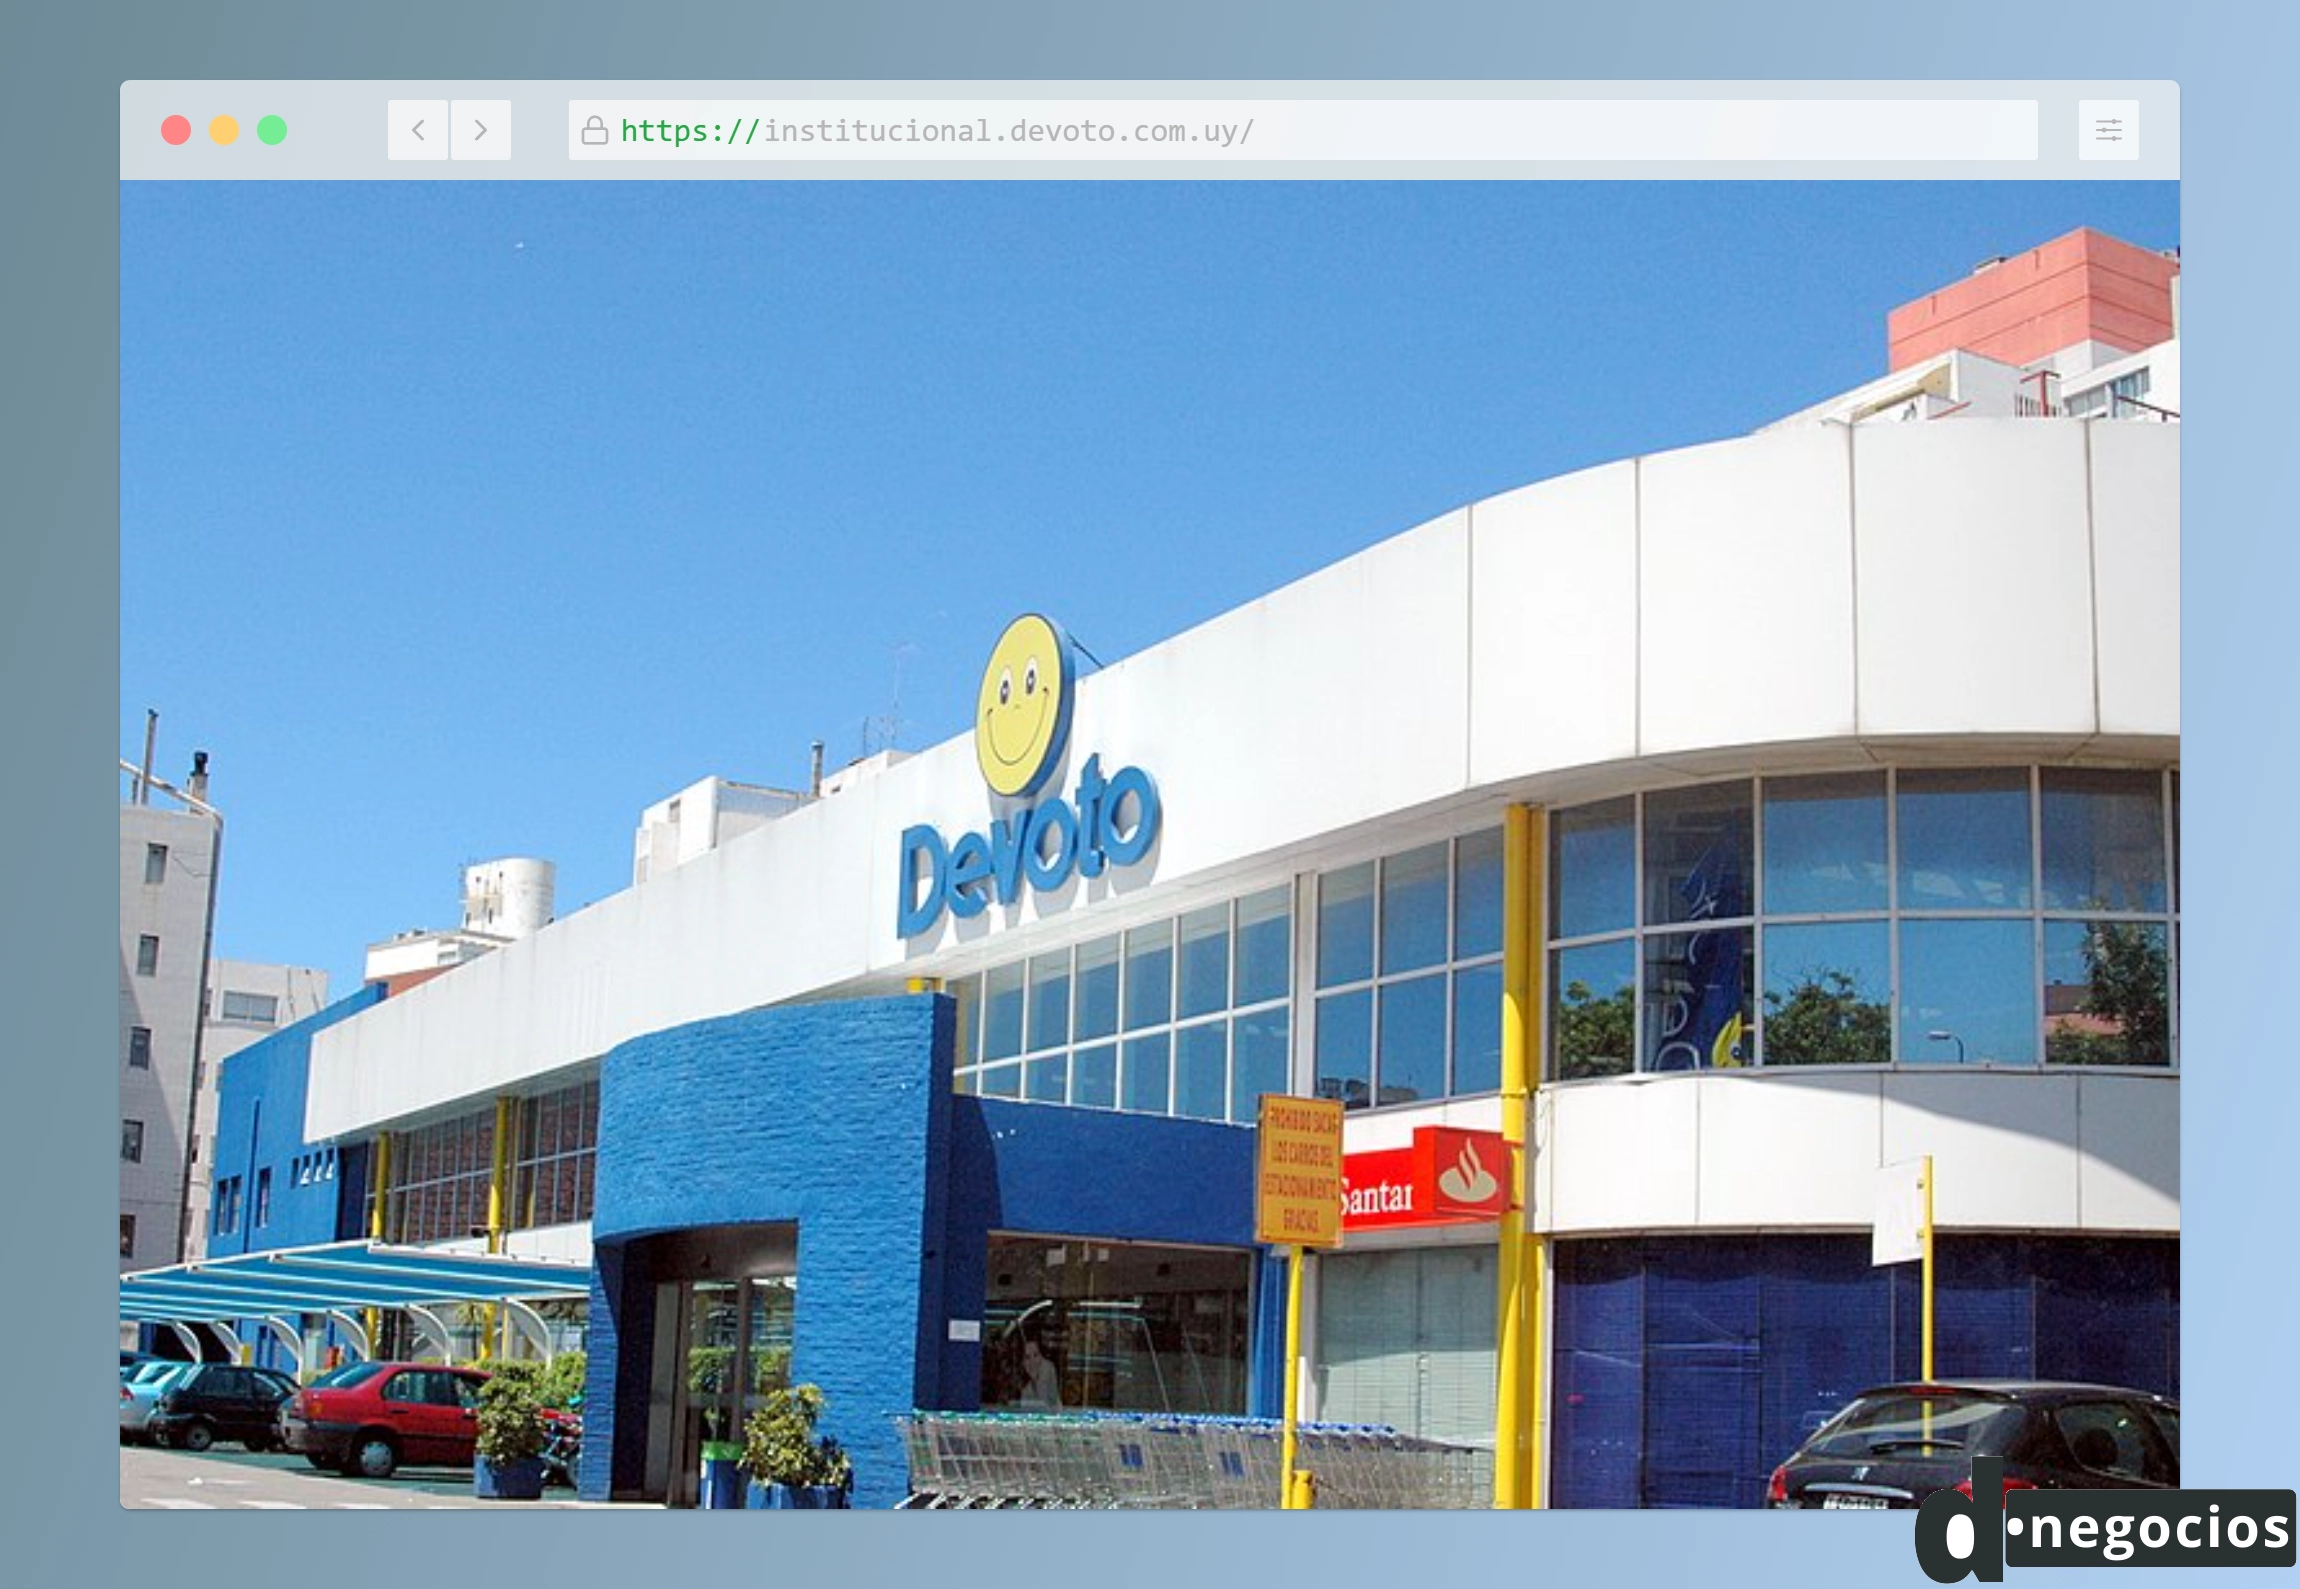 Fotografía de un supermercado Devoto en Uruguay.